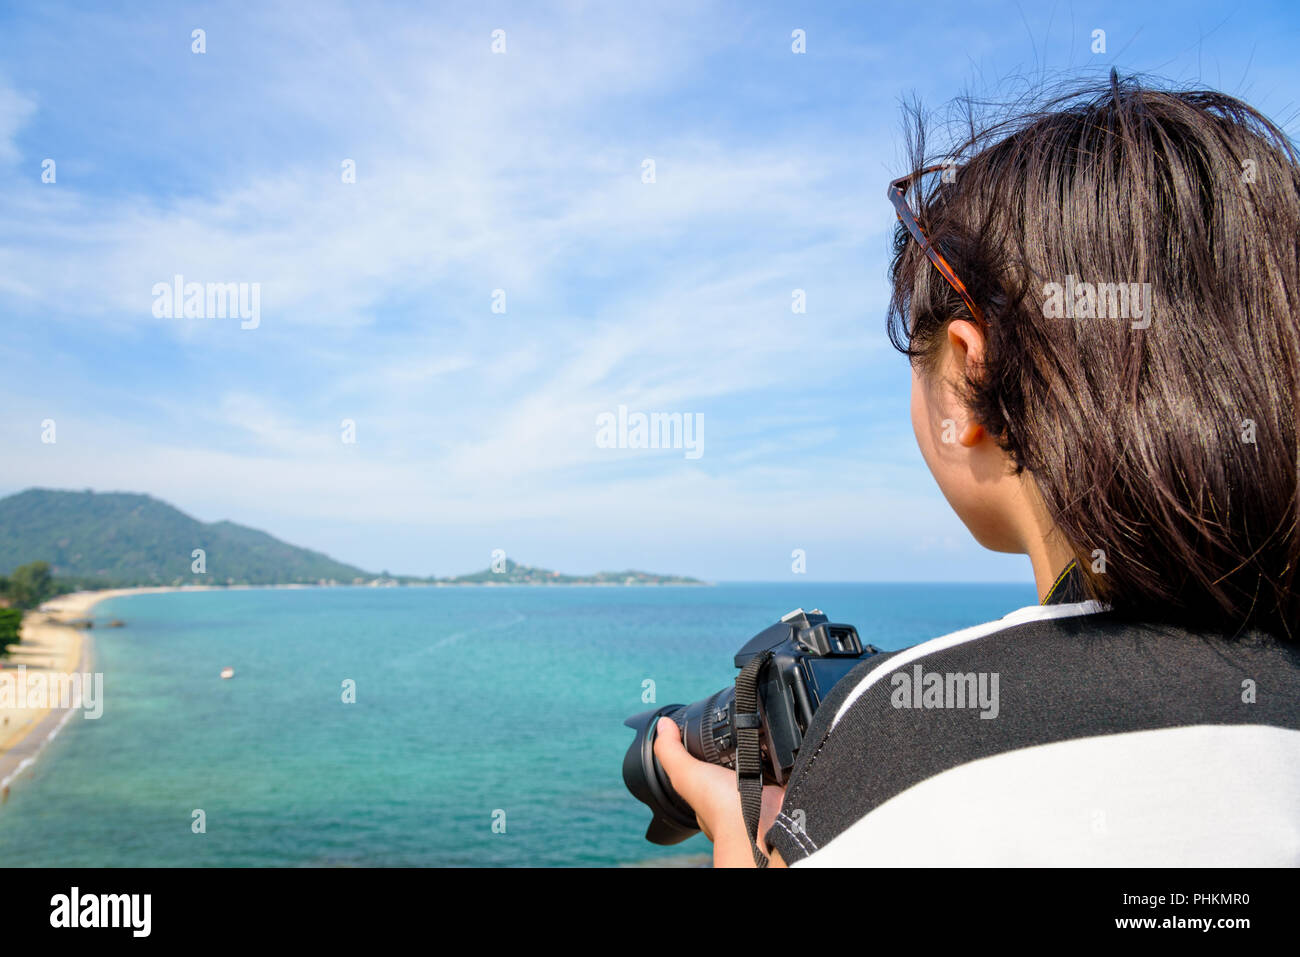 Junges Mädchen hält eine DSLR-Kamera auf hohe und schöne Natur Landschaft des blauen Meer am Strand Lamai höhe Aussichtspunkt im Sommer Reisen bei Ko Stockfoto